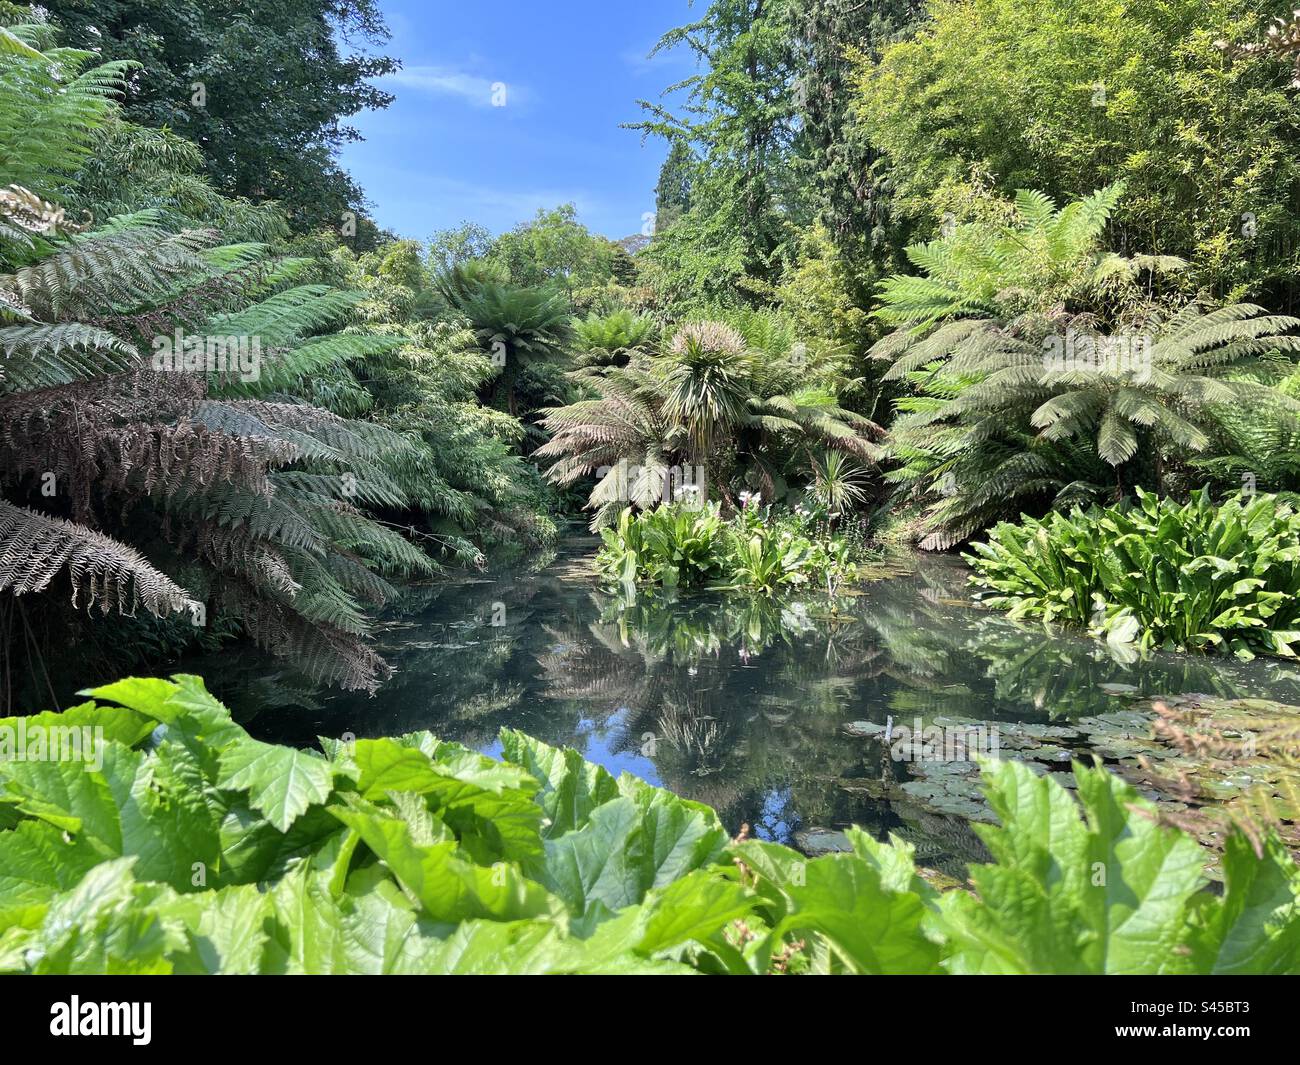 Incroyable scène de jungle dans les jardins tropicaux de Cornouailles aux jardins perdus de Heligan, Angleterre en été Banque D'Images